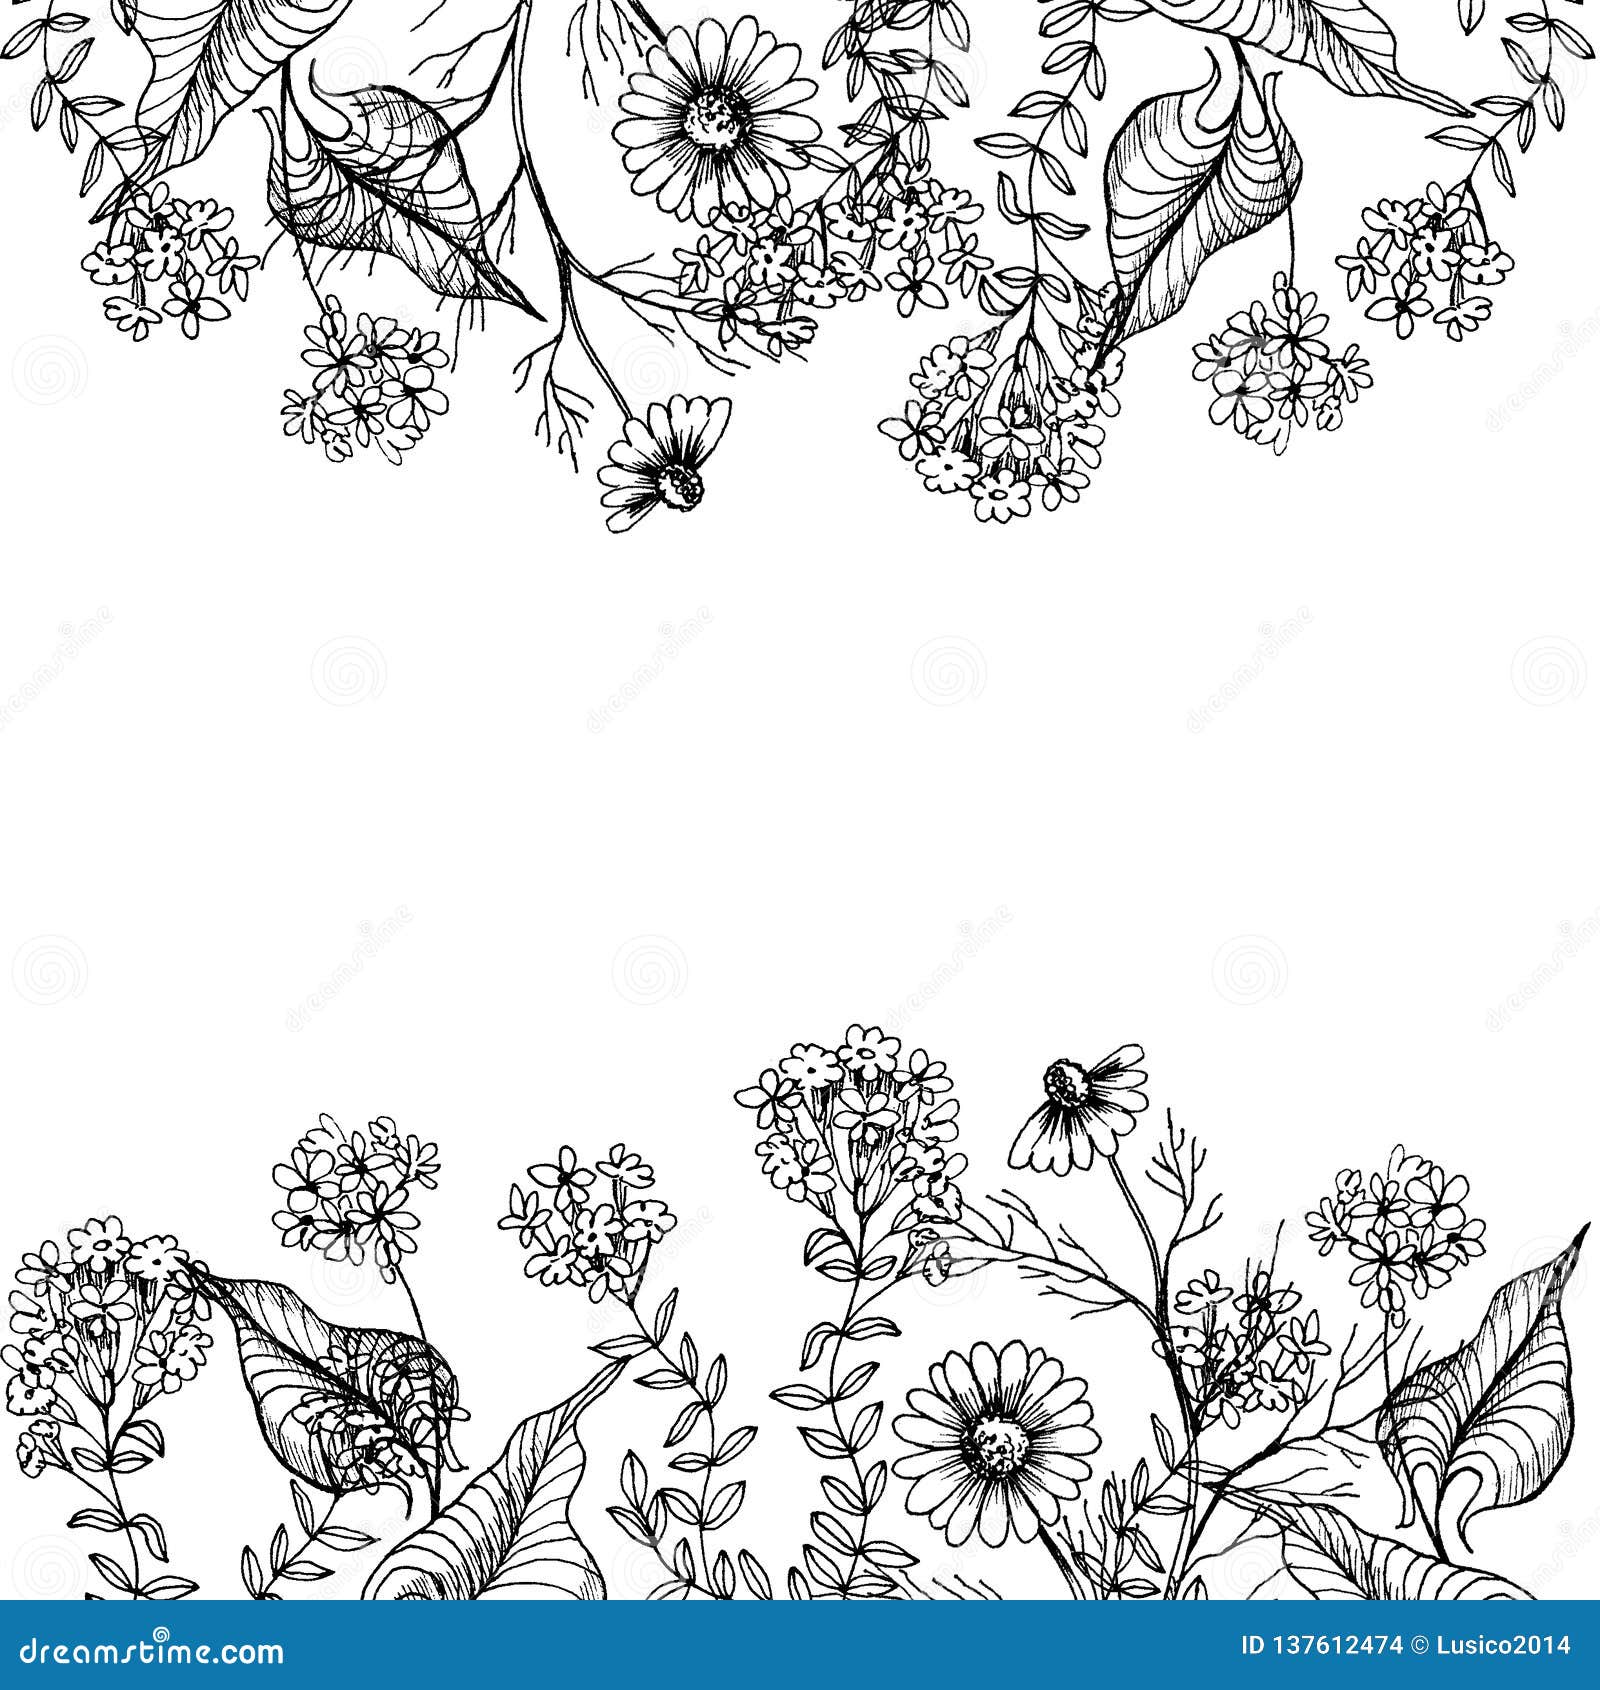 botanical monochrom frame with wild flowers.